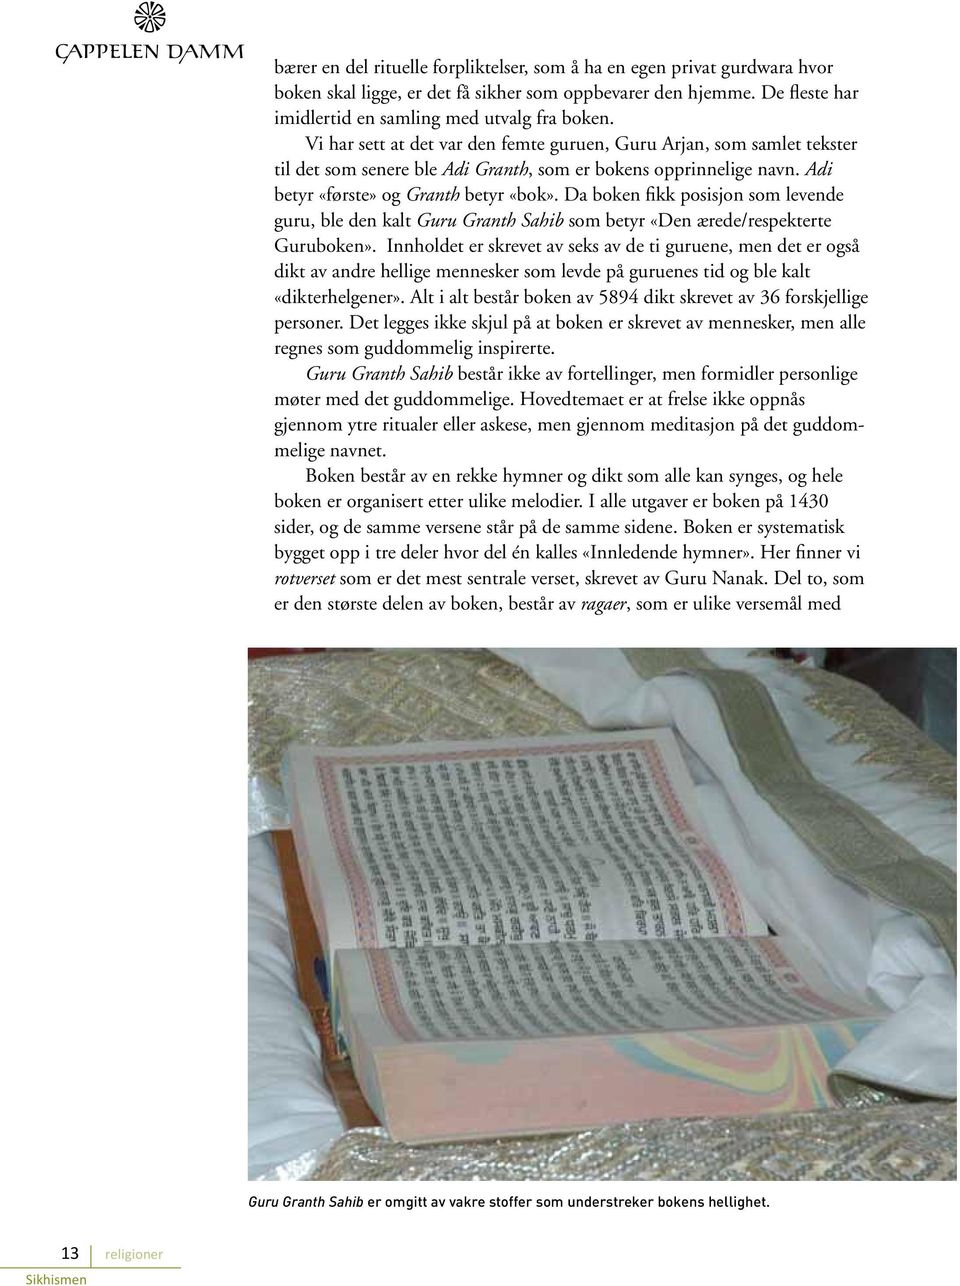 Da boken fikk posisjon som levende guru, ble den kalt Guru Granth Sahib som betyr «Den ærede/respekterte Guruboken».